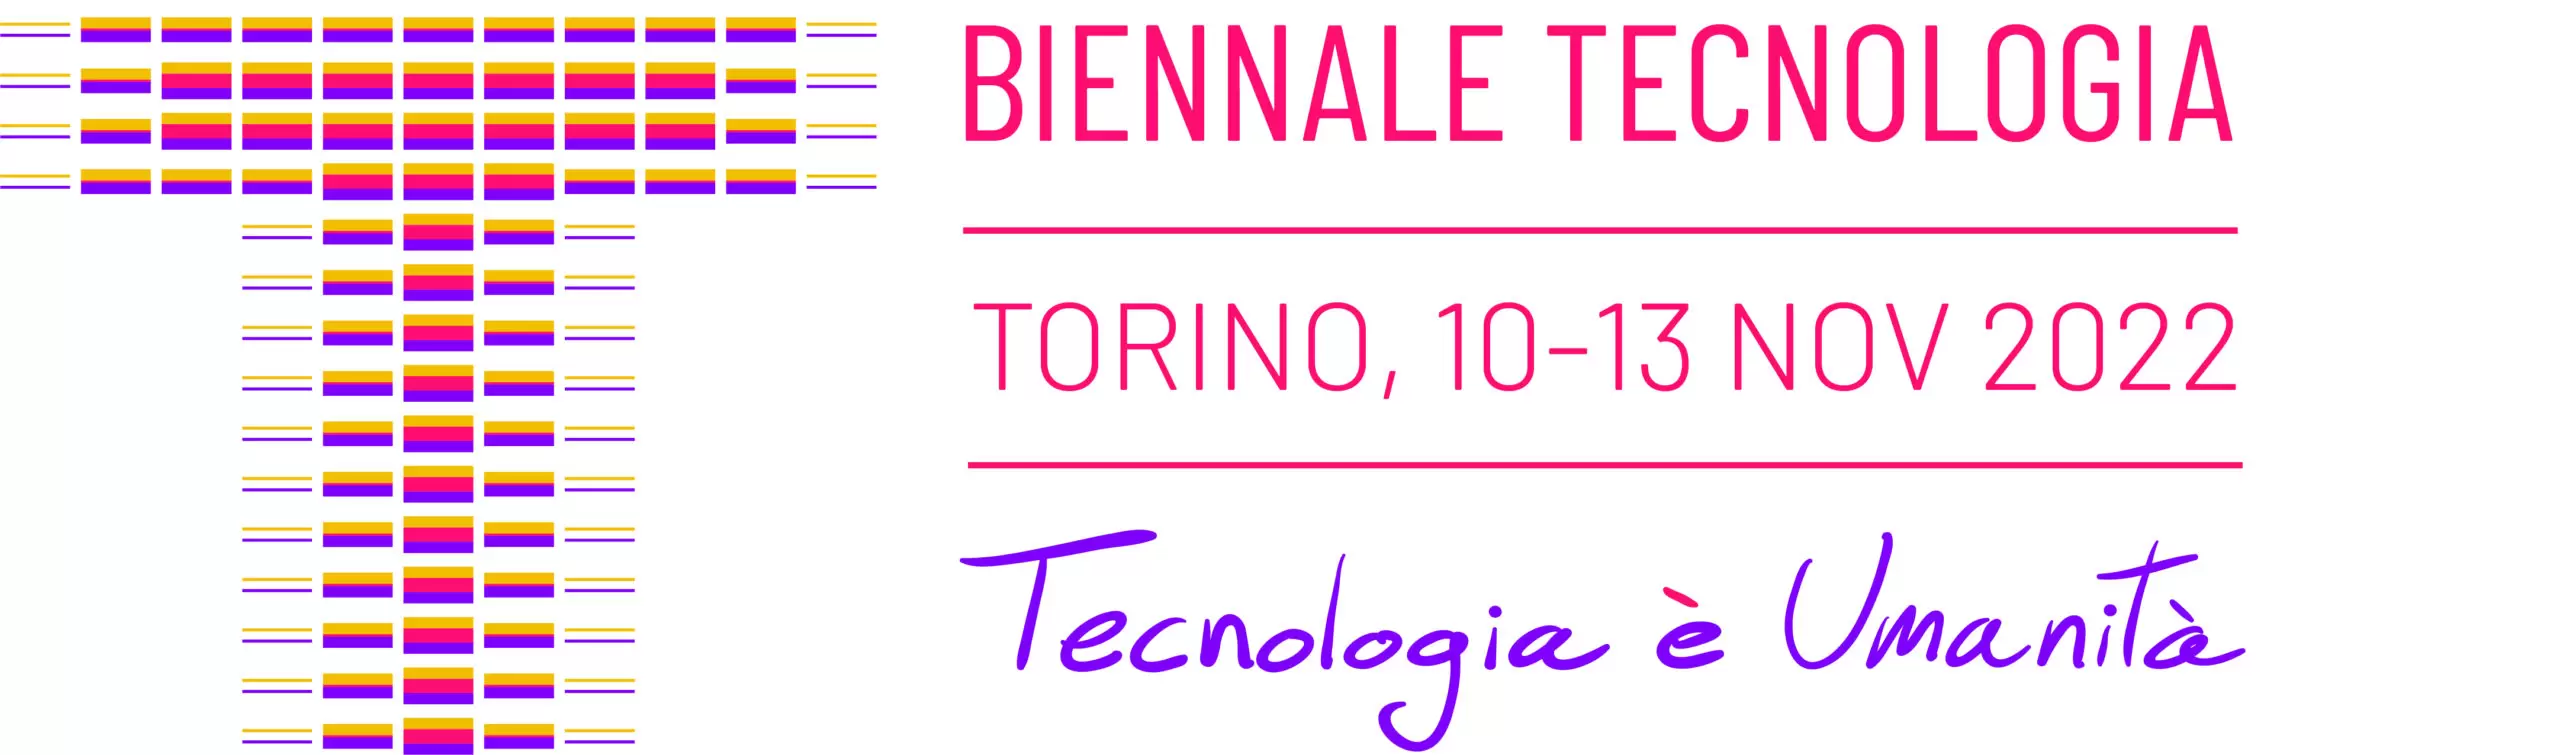 Biennale Tecnologia Torino, Будівництво для поколінь